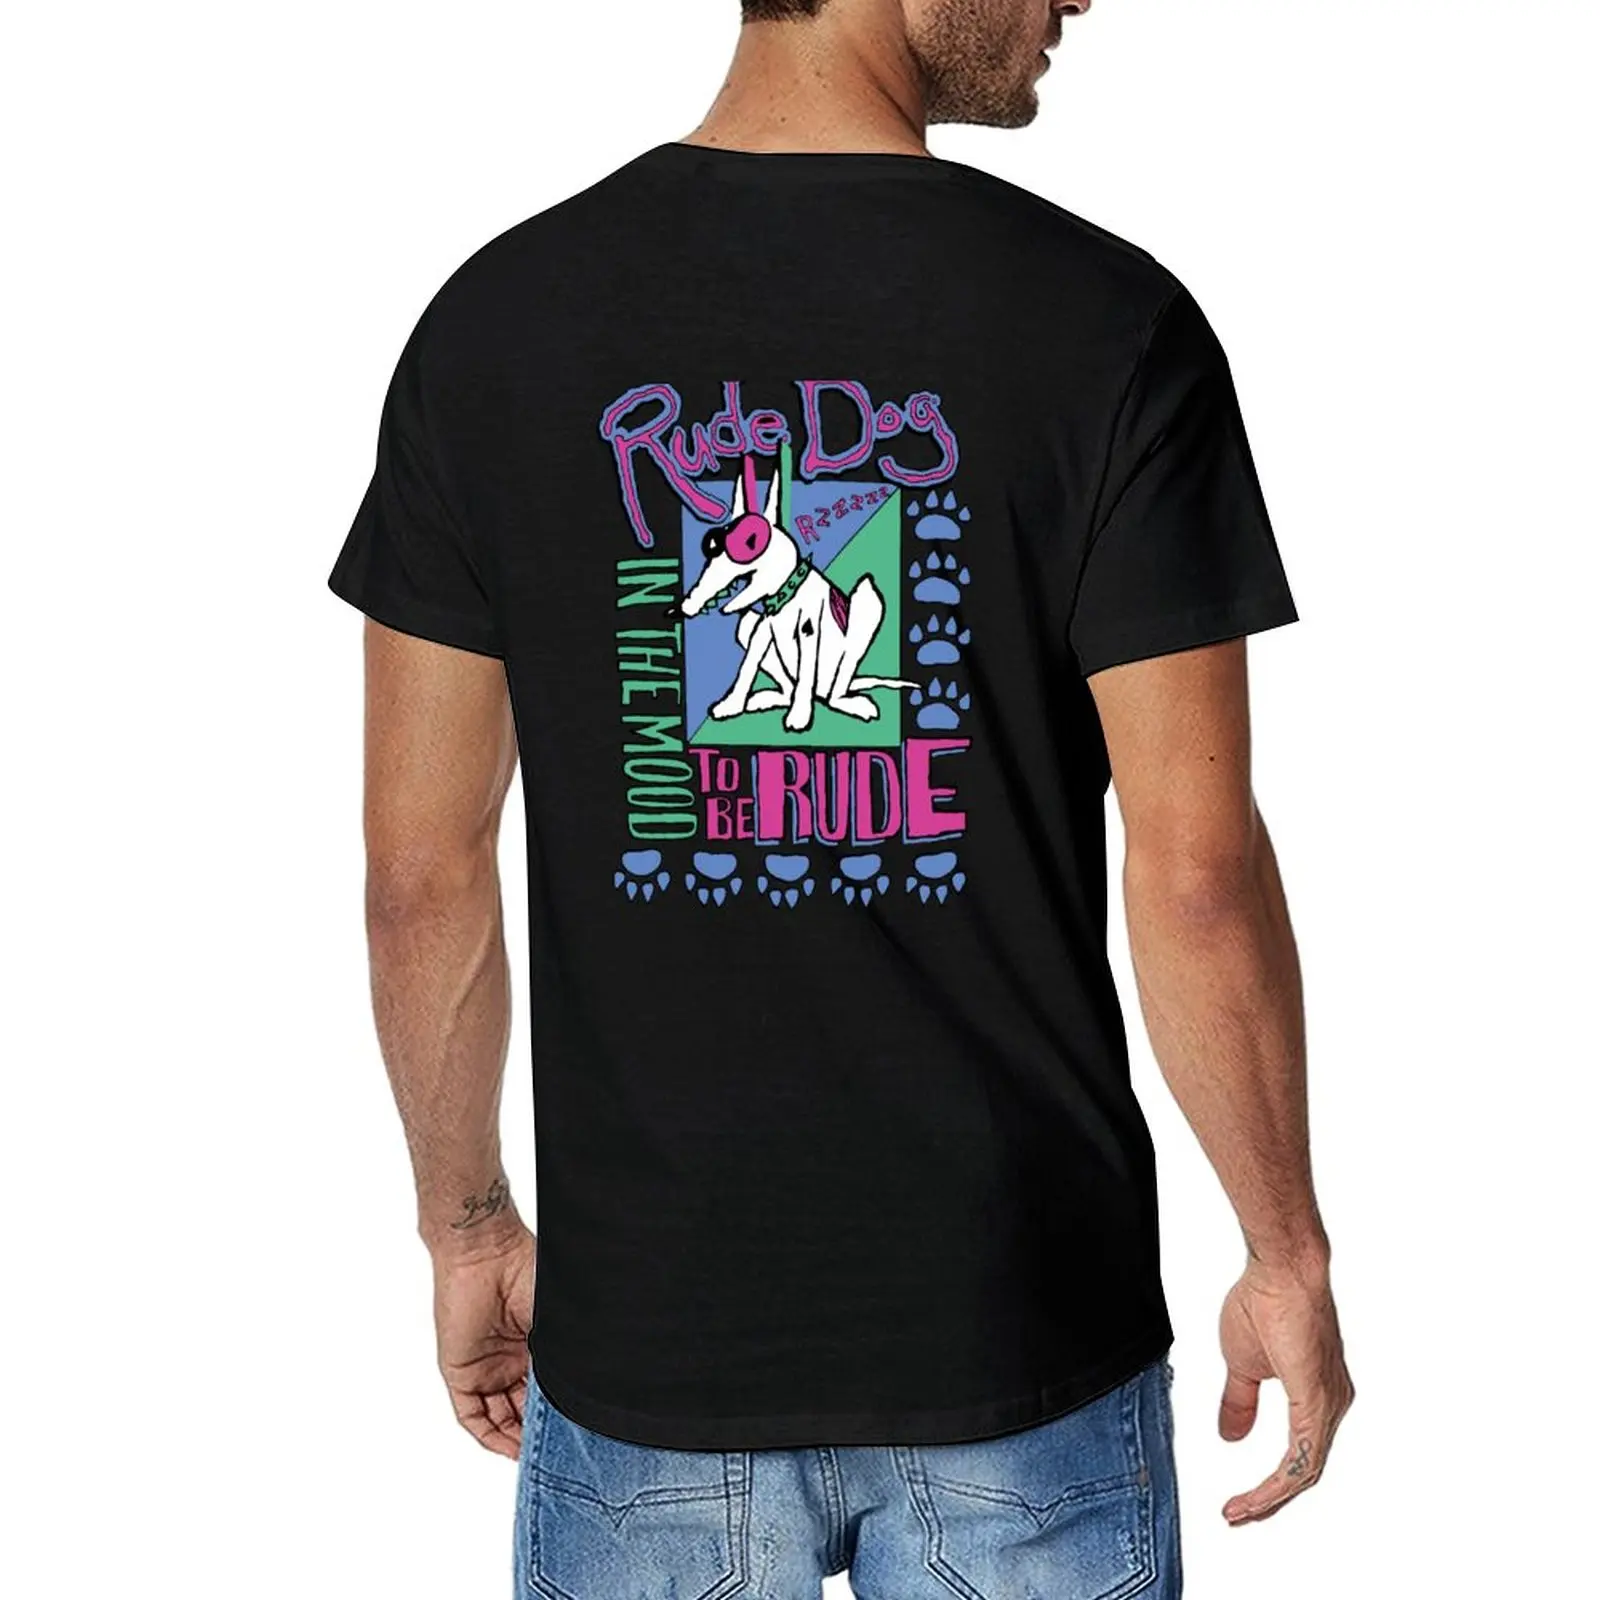 Новая футболка IN THE MOOD TO BE RUDE, футболки на заказ, создайте свои собственные милые топы, мужские забавные футболки с графическим рисунком